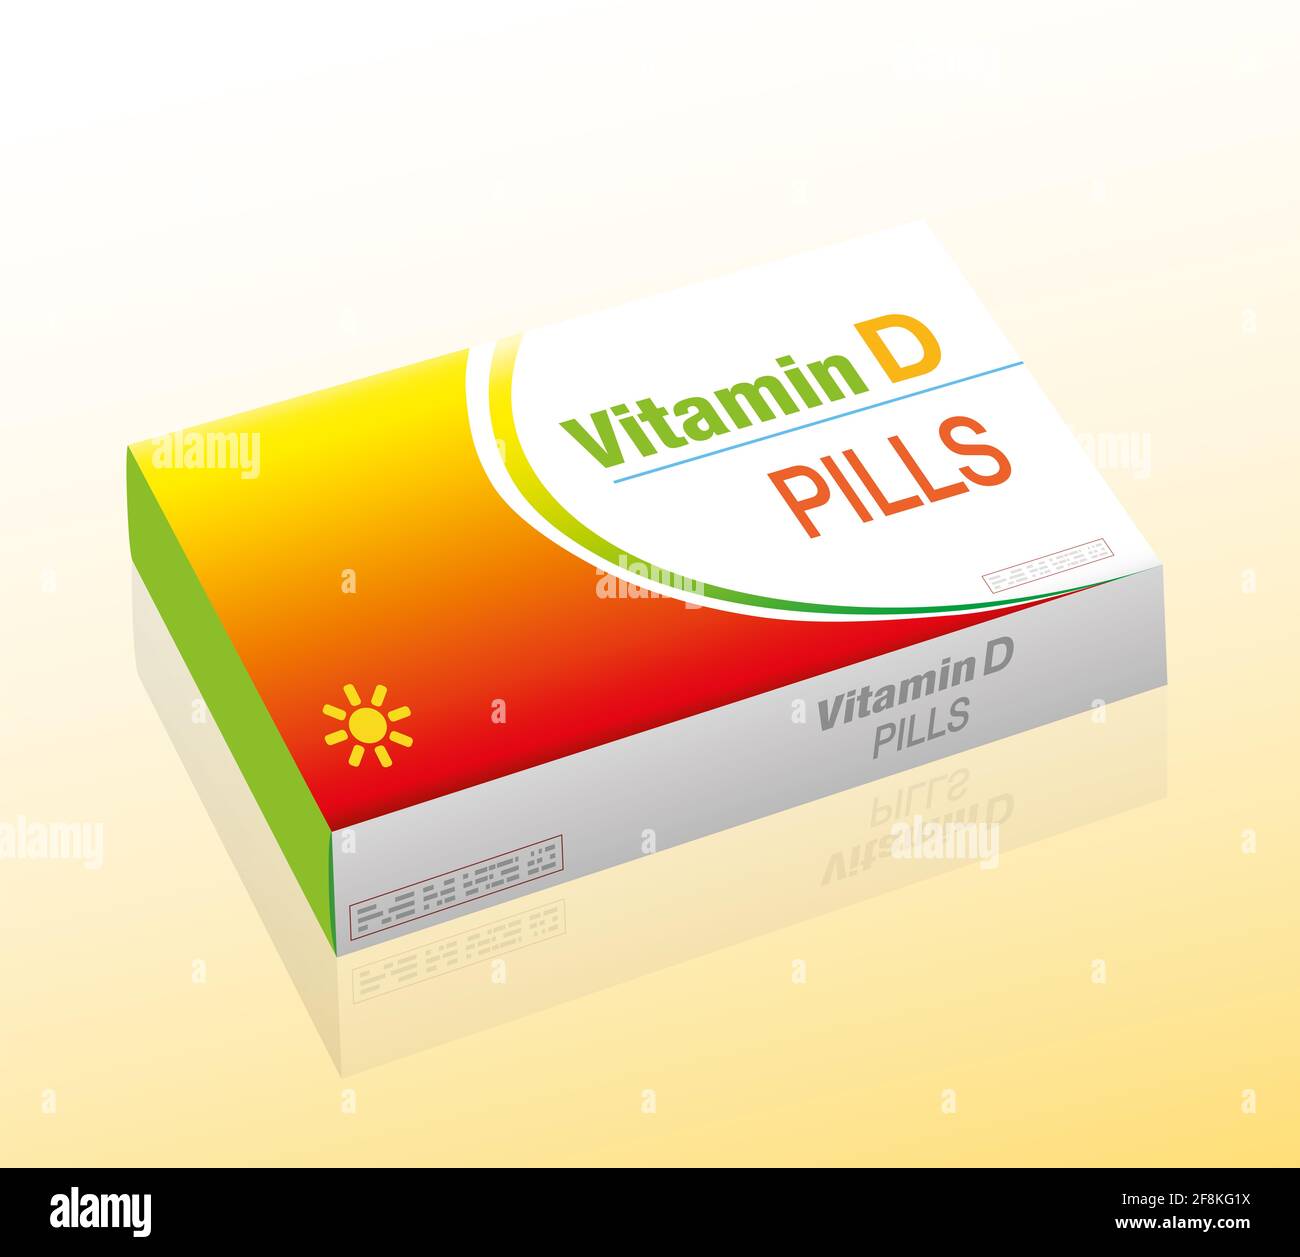 Pillole di vitamina D, come supplemento alla dieta sana, pacchetto medico fittizio con compresse che impediscono la carenza di vitamina D, illustrazione, sfondo bianco. Foto Stock